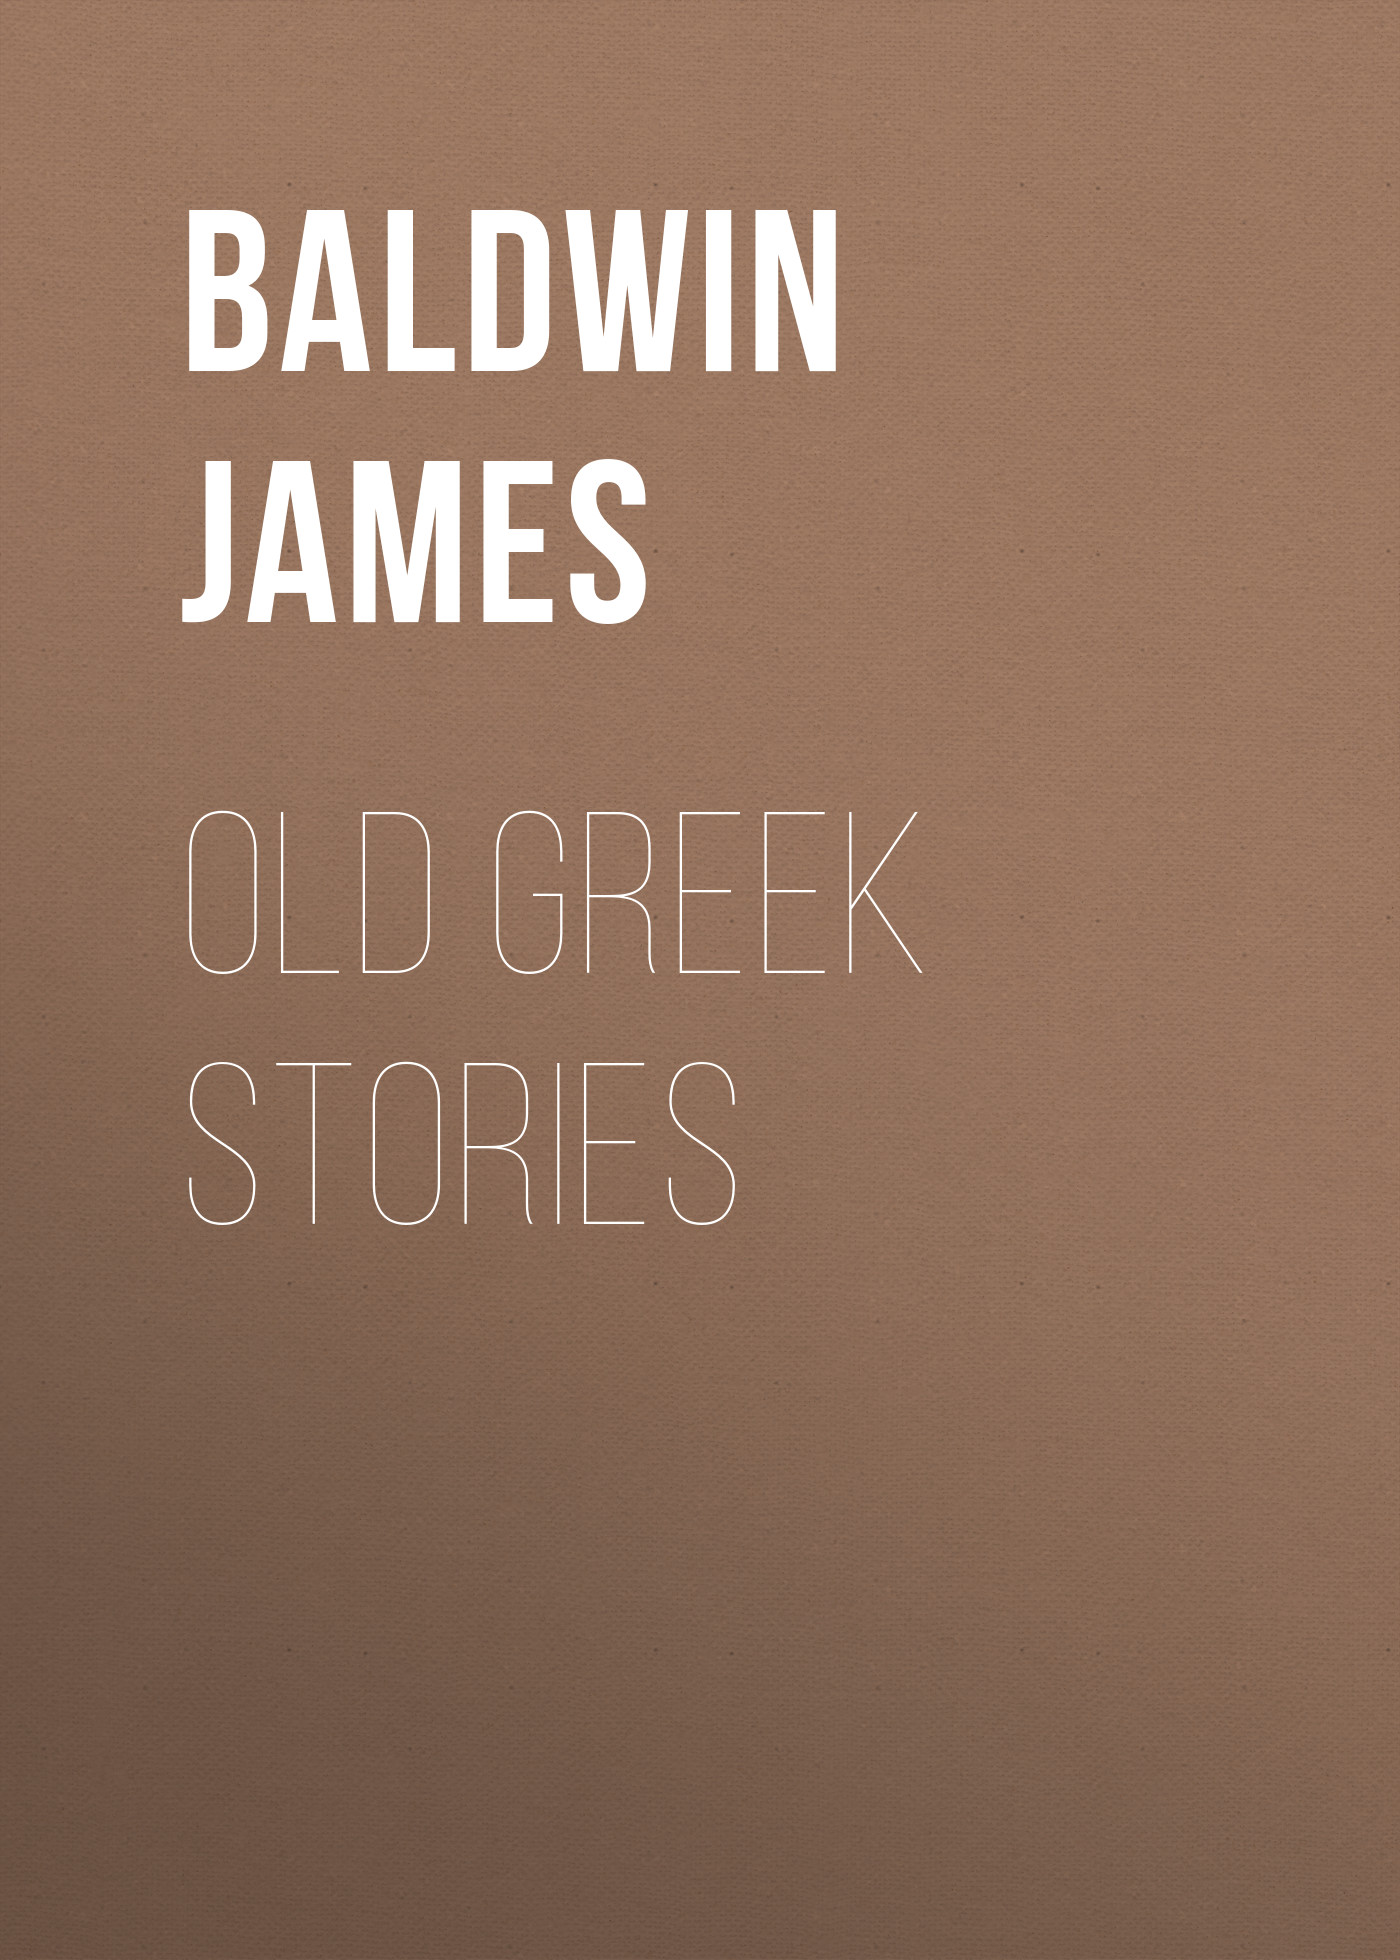 Книга Old Greek Stories из серии , созданная James Baldwin, написана в жанре Зарубежные детские книги, Мифы. Легенды. Эпос, Зарубежная старинная литература, Зарубежная классика. Стоимость электронной книги Old Greek Stories с идентификатором 34841270 составляет 0 руб.